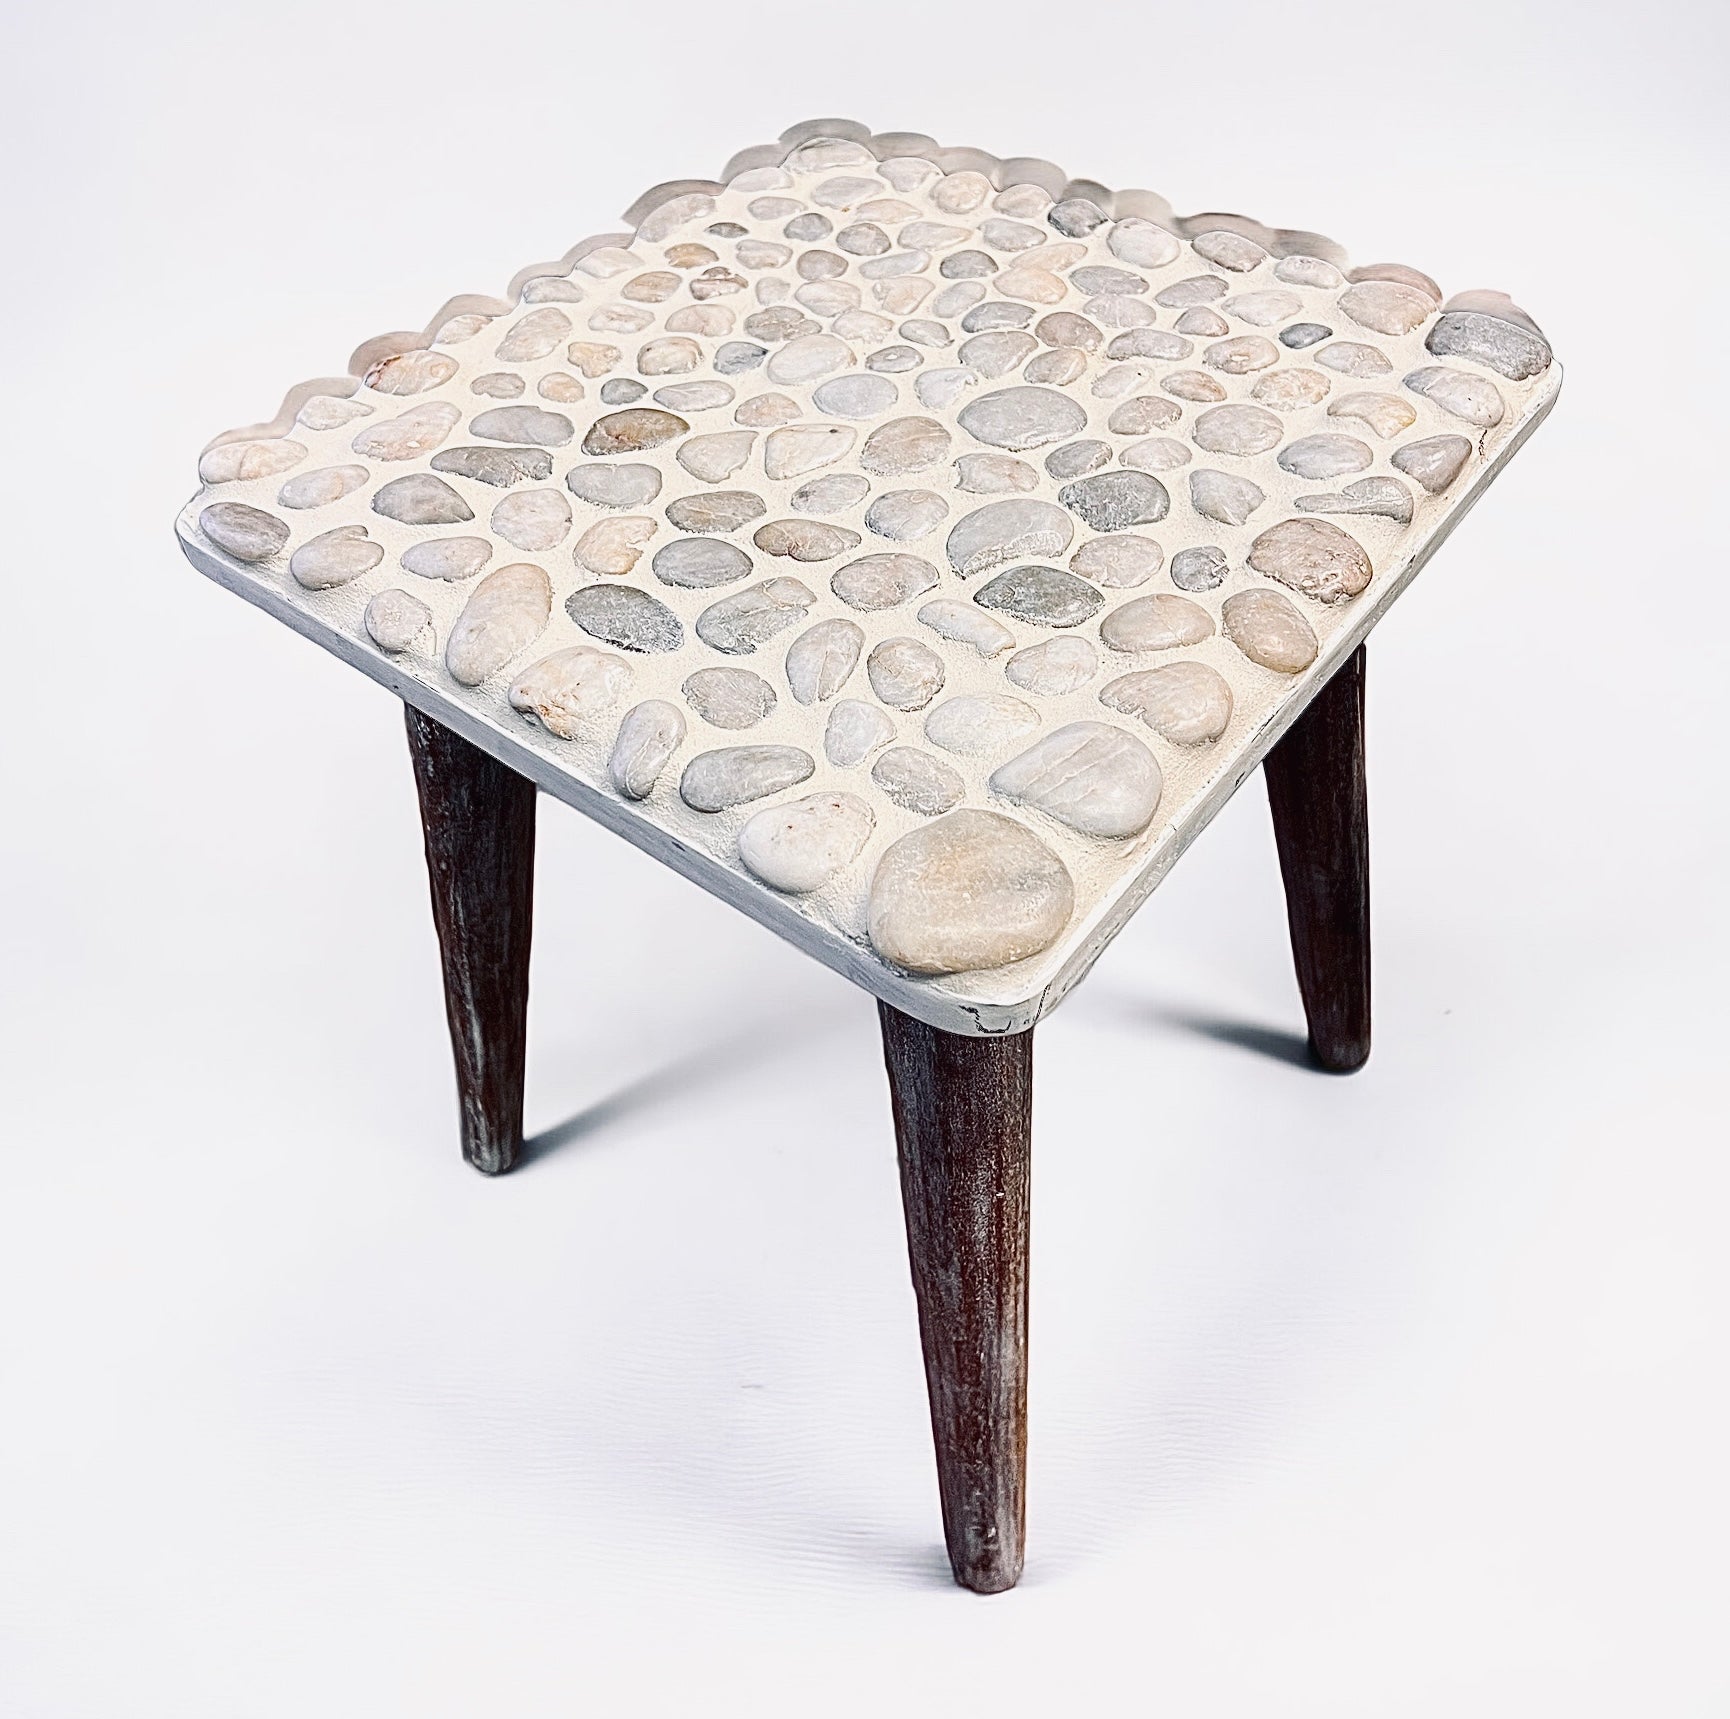 Pebbled Stone Handmade Table